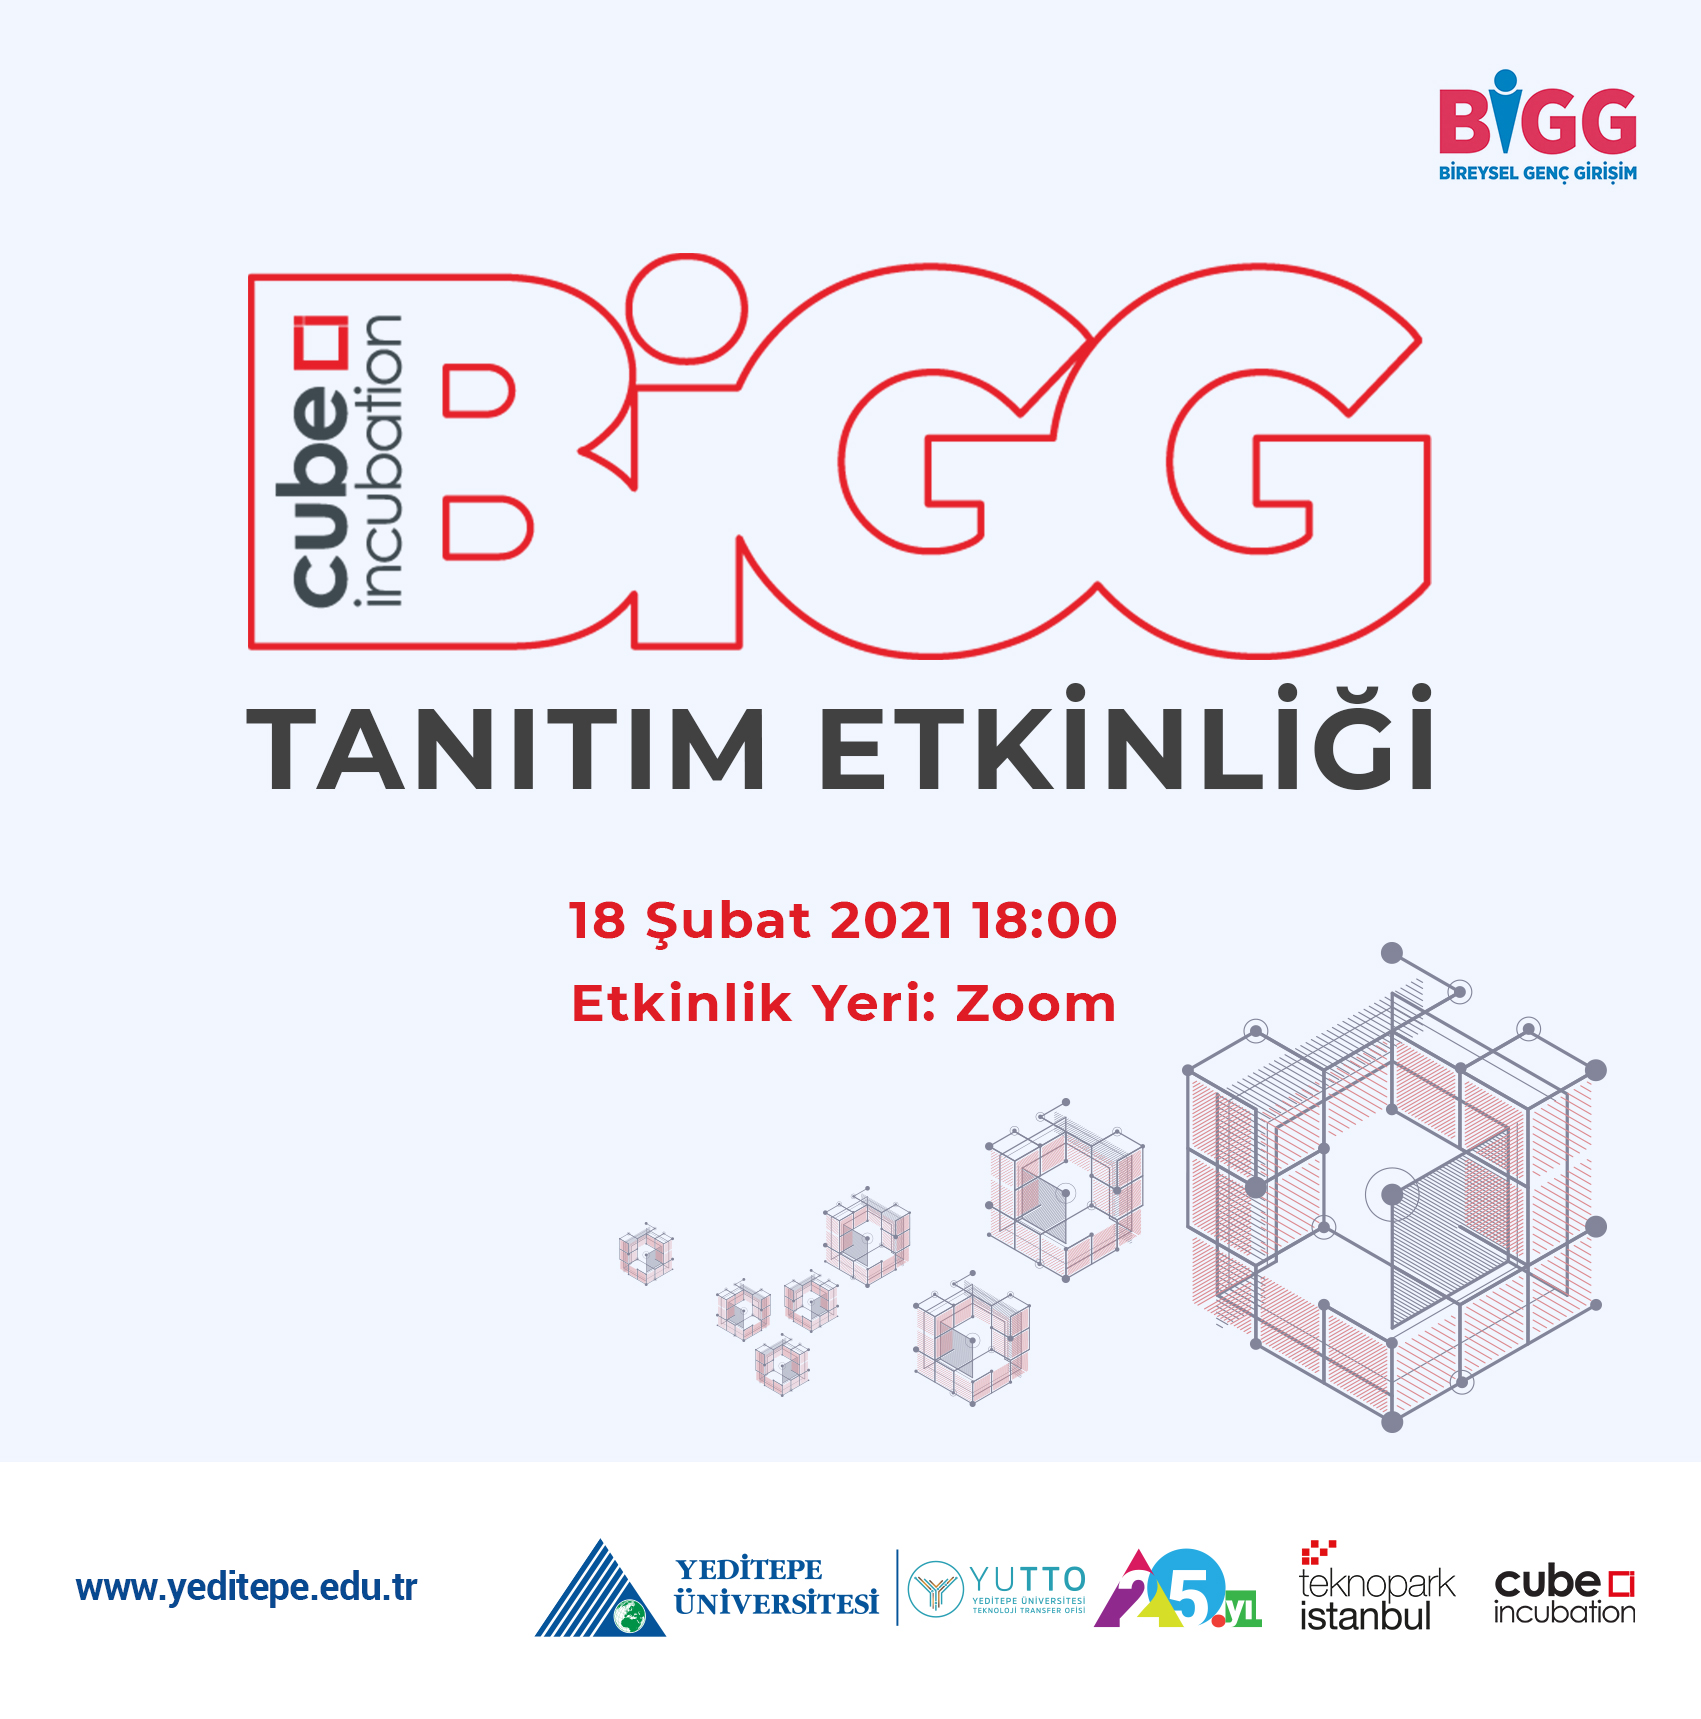 BiGG Cube Incubation Tanıtım Etkinliği